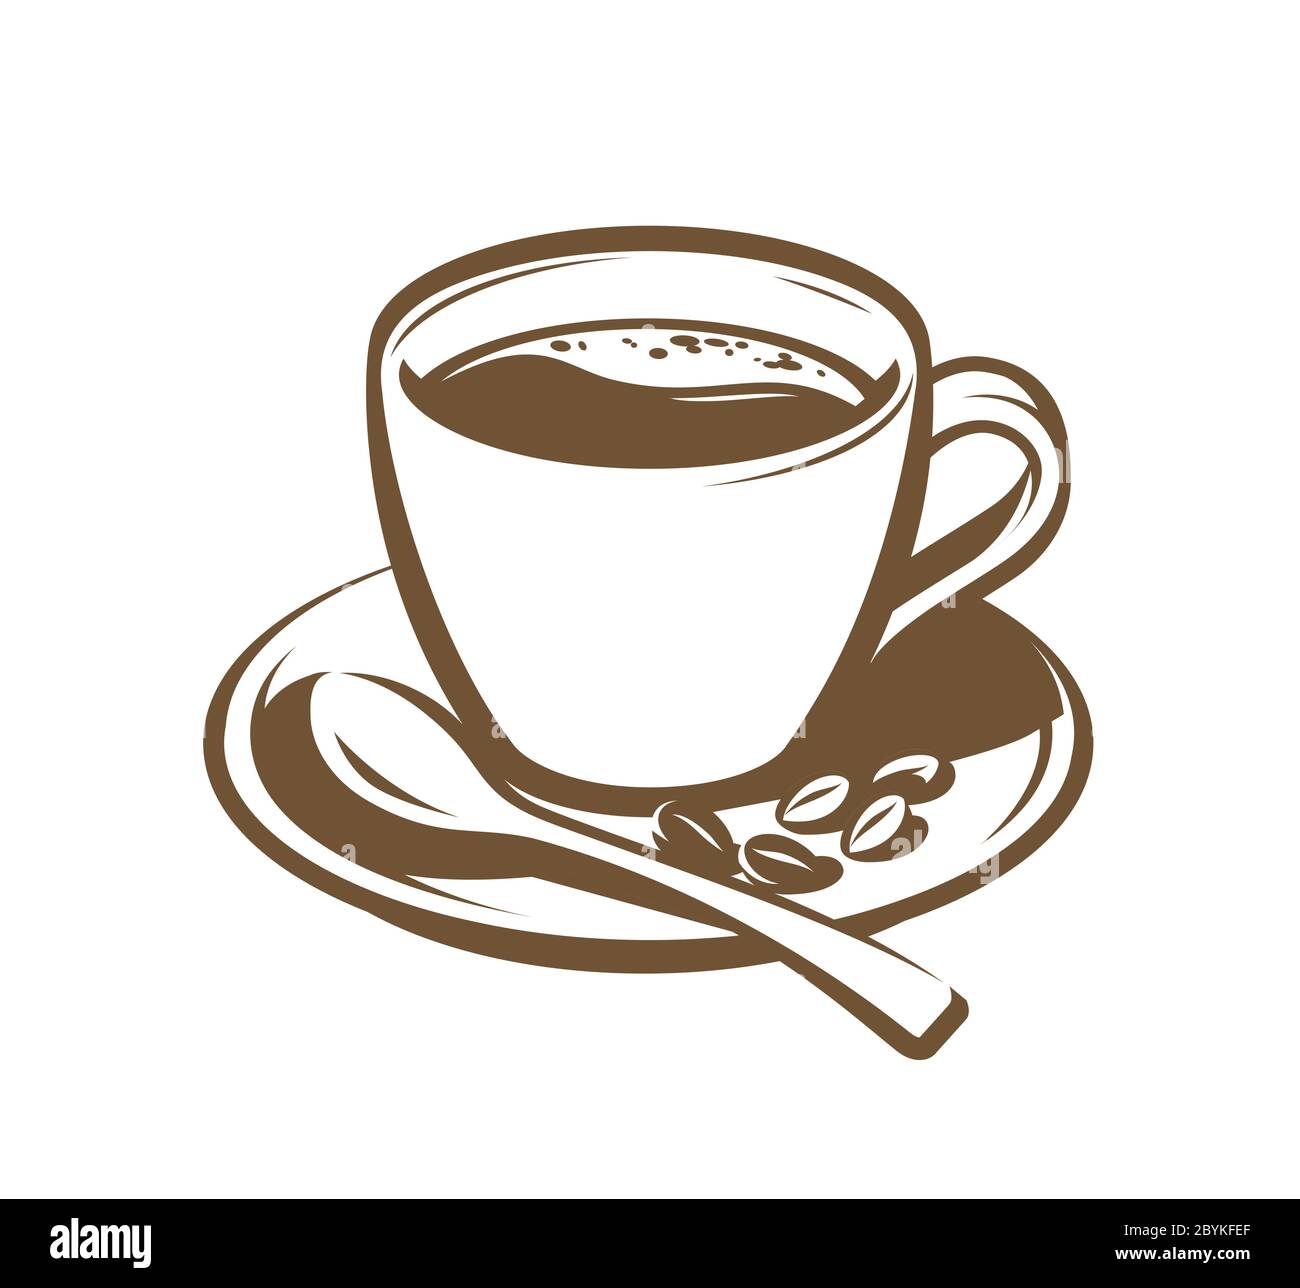 Tasse Kaffee retro. Vintage-Vektorgrafik. Menügestaltung für Café und Restaurant Stock Vektor